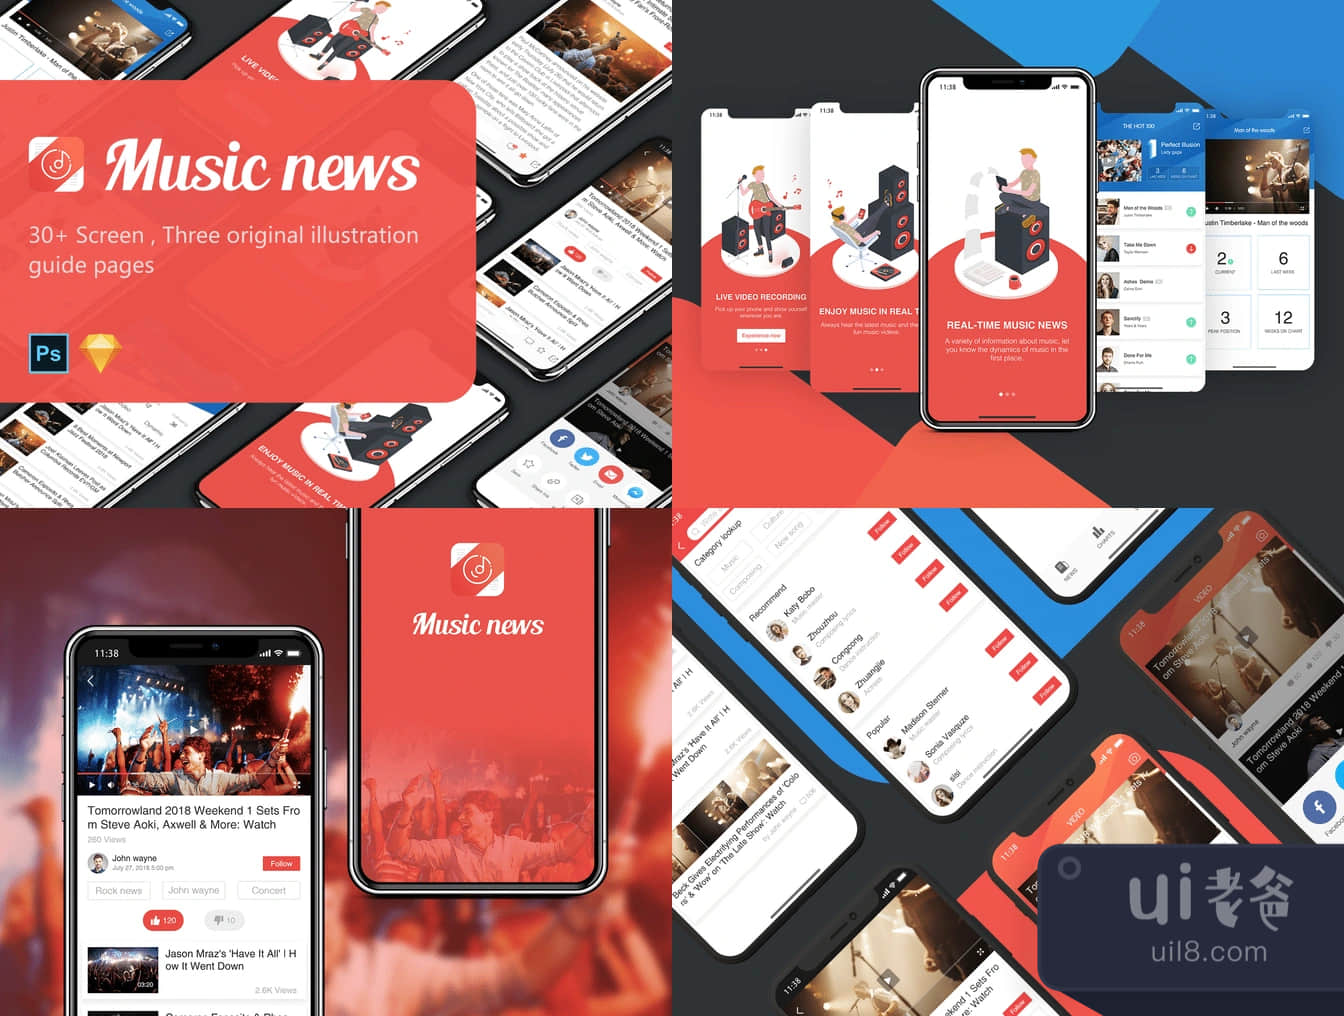 音乐新闻UI包 (Music News UI Kit)插图1